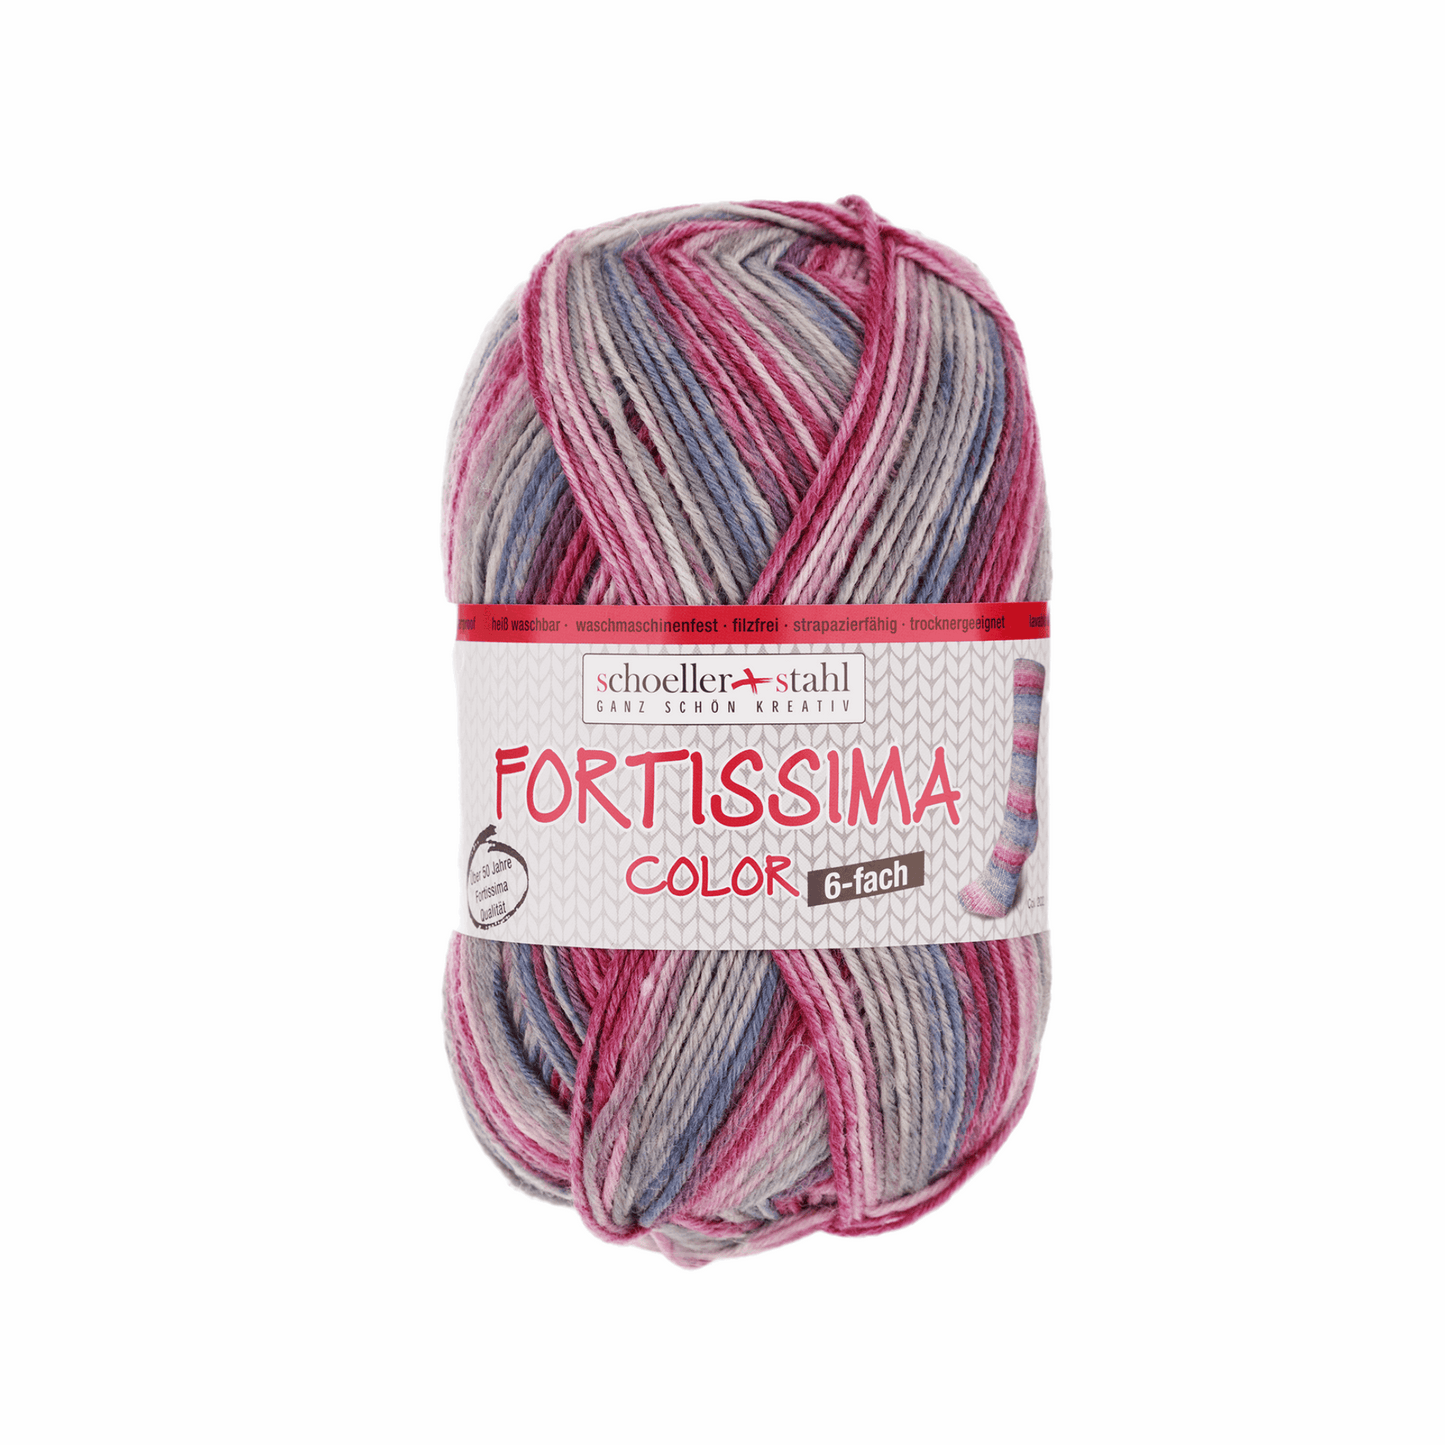 Fortissima 6f. 150g color, 90008, Farbe 202, erika